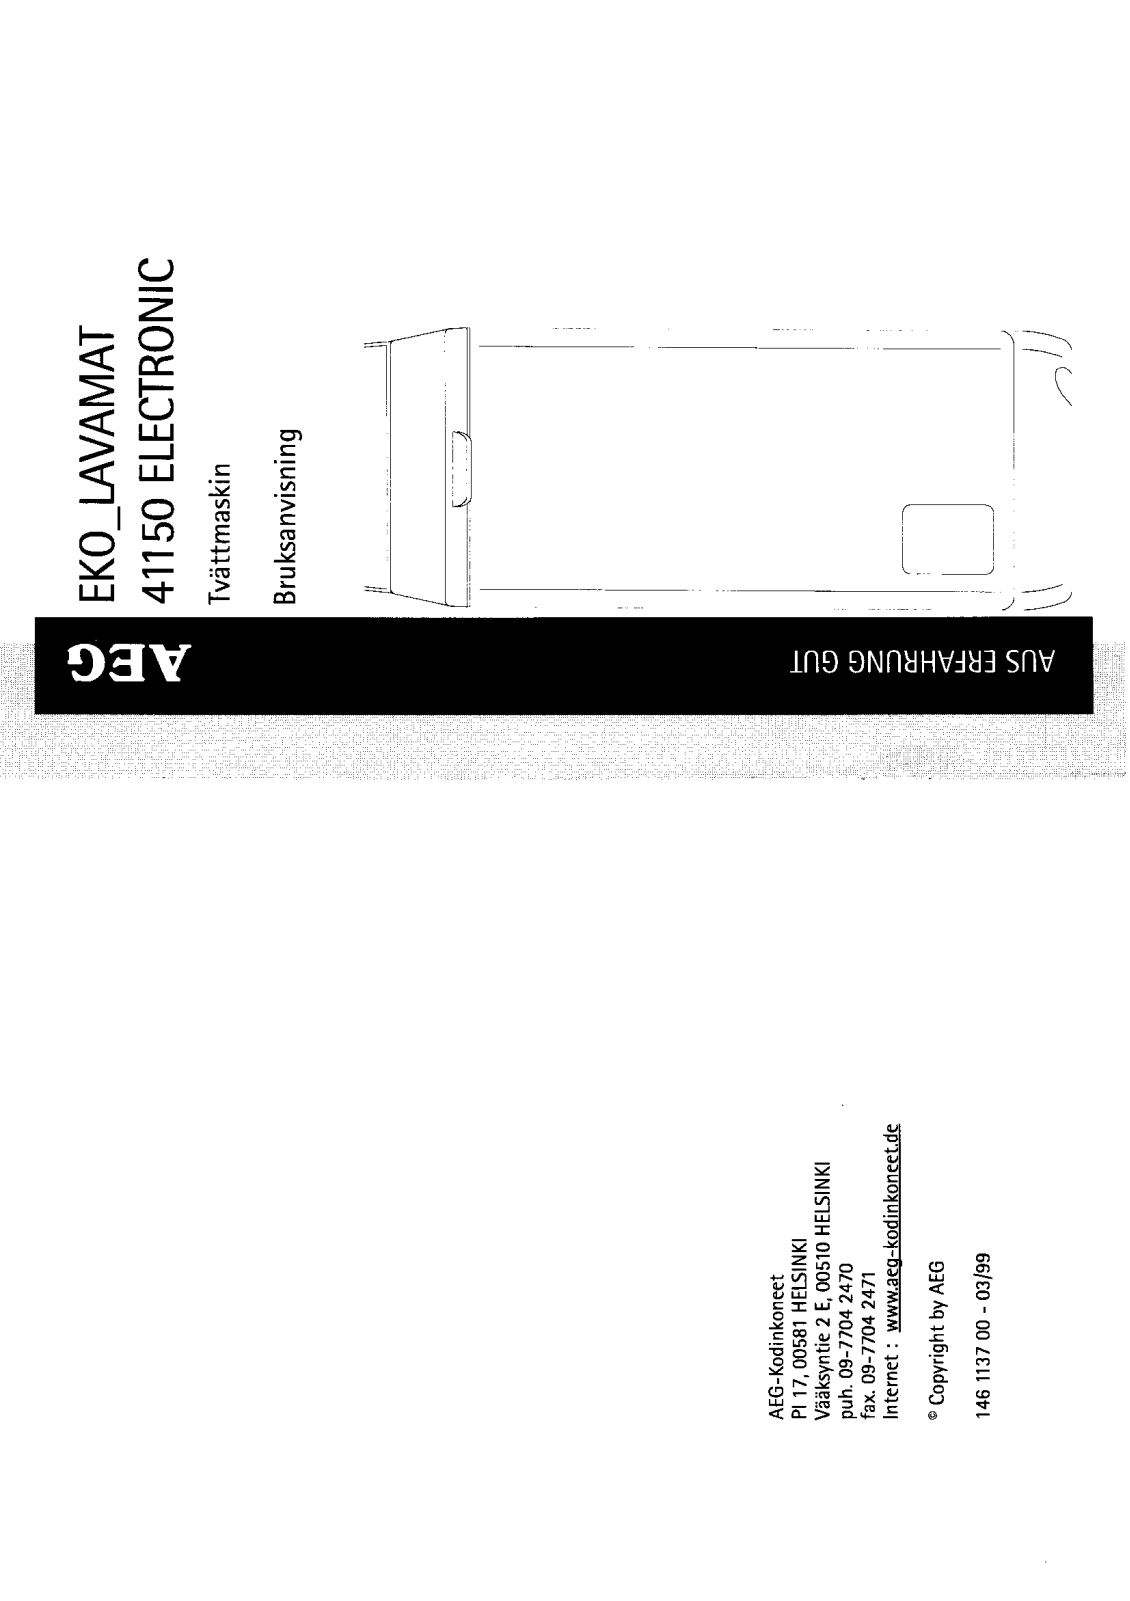 AEG LAV41150 User Manual